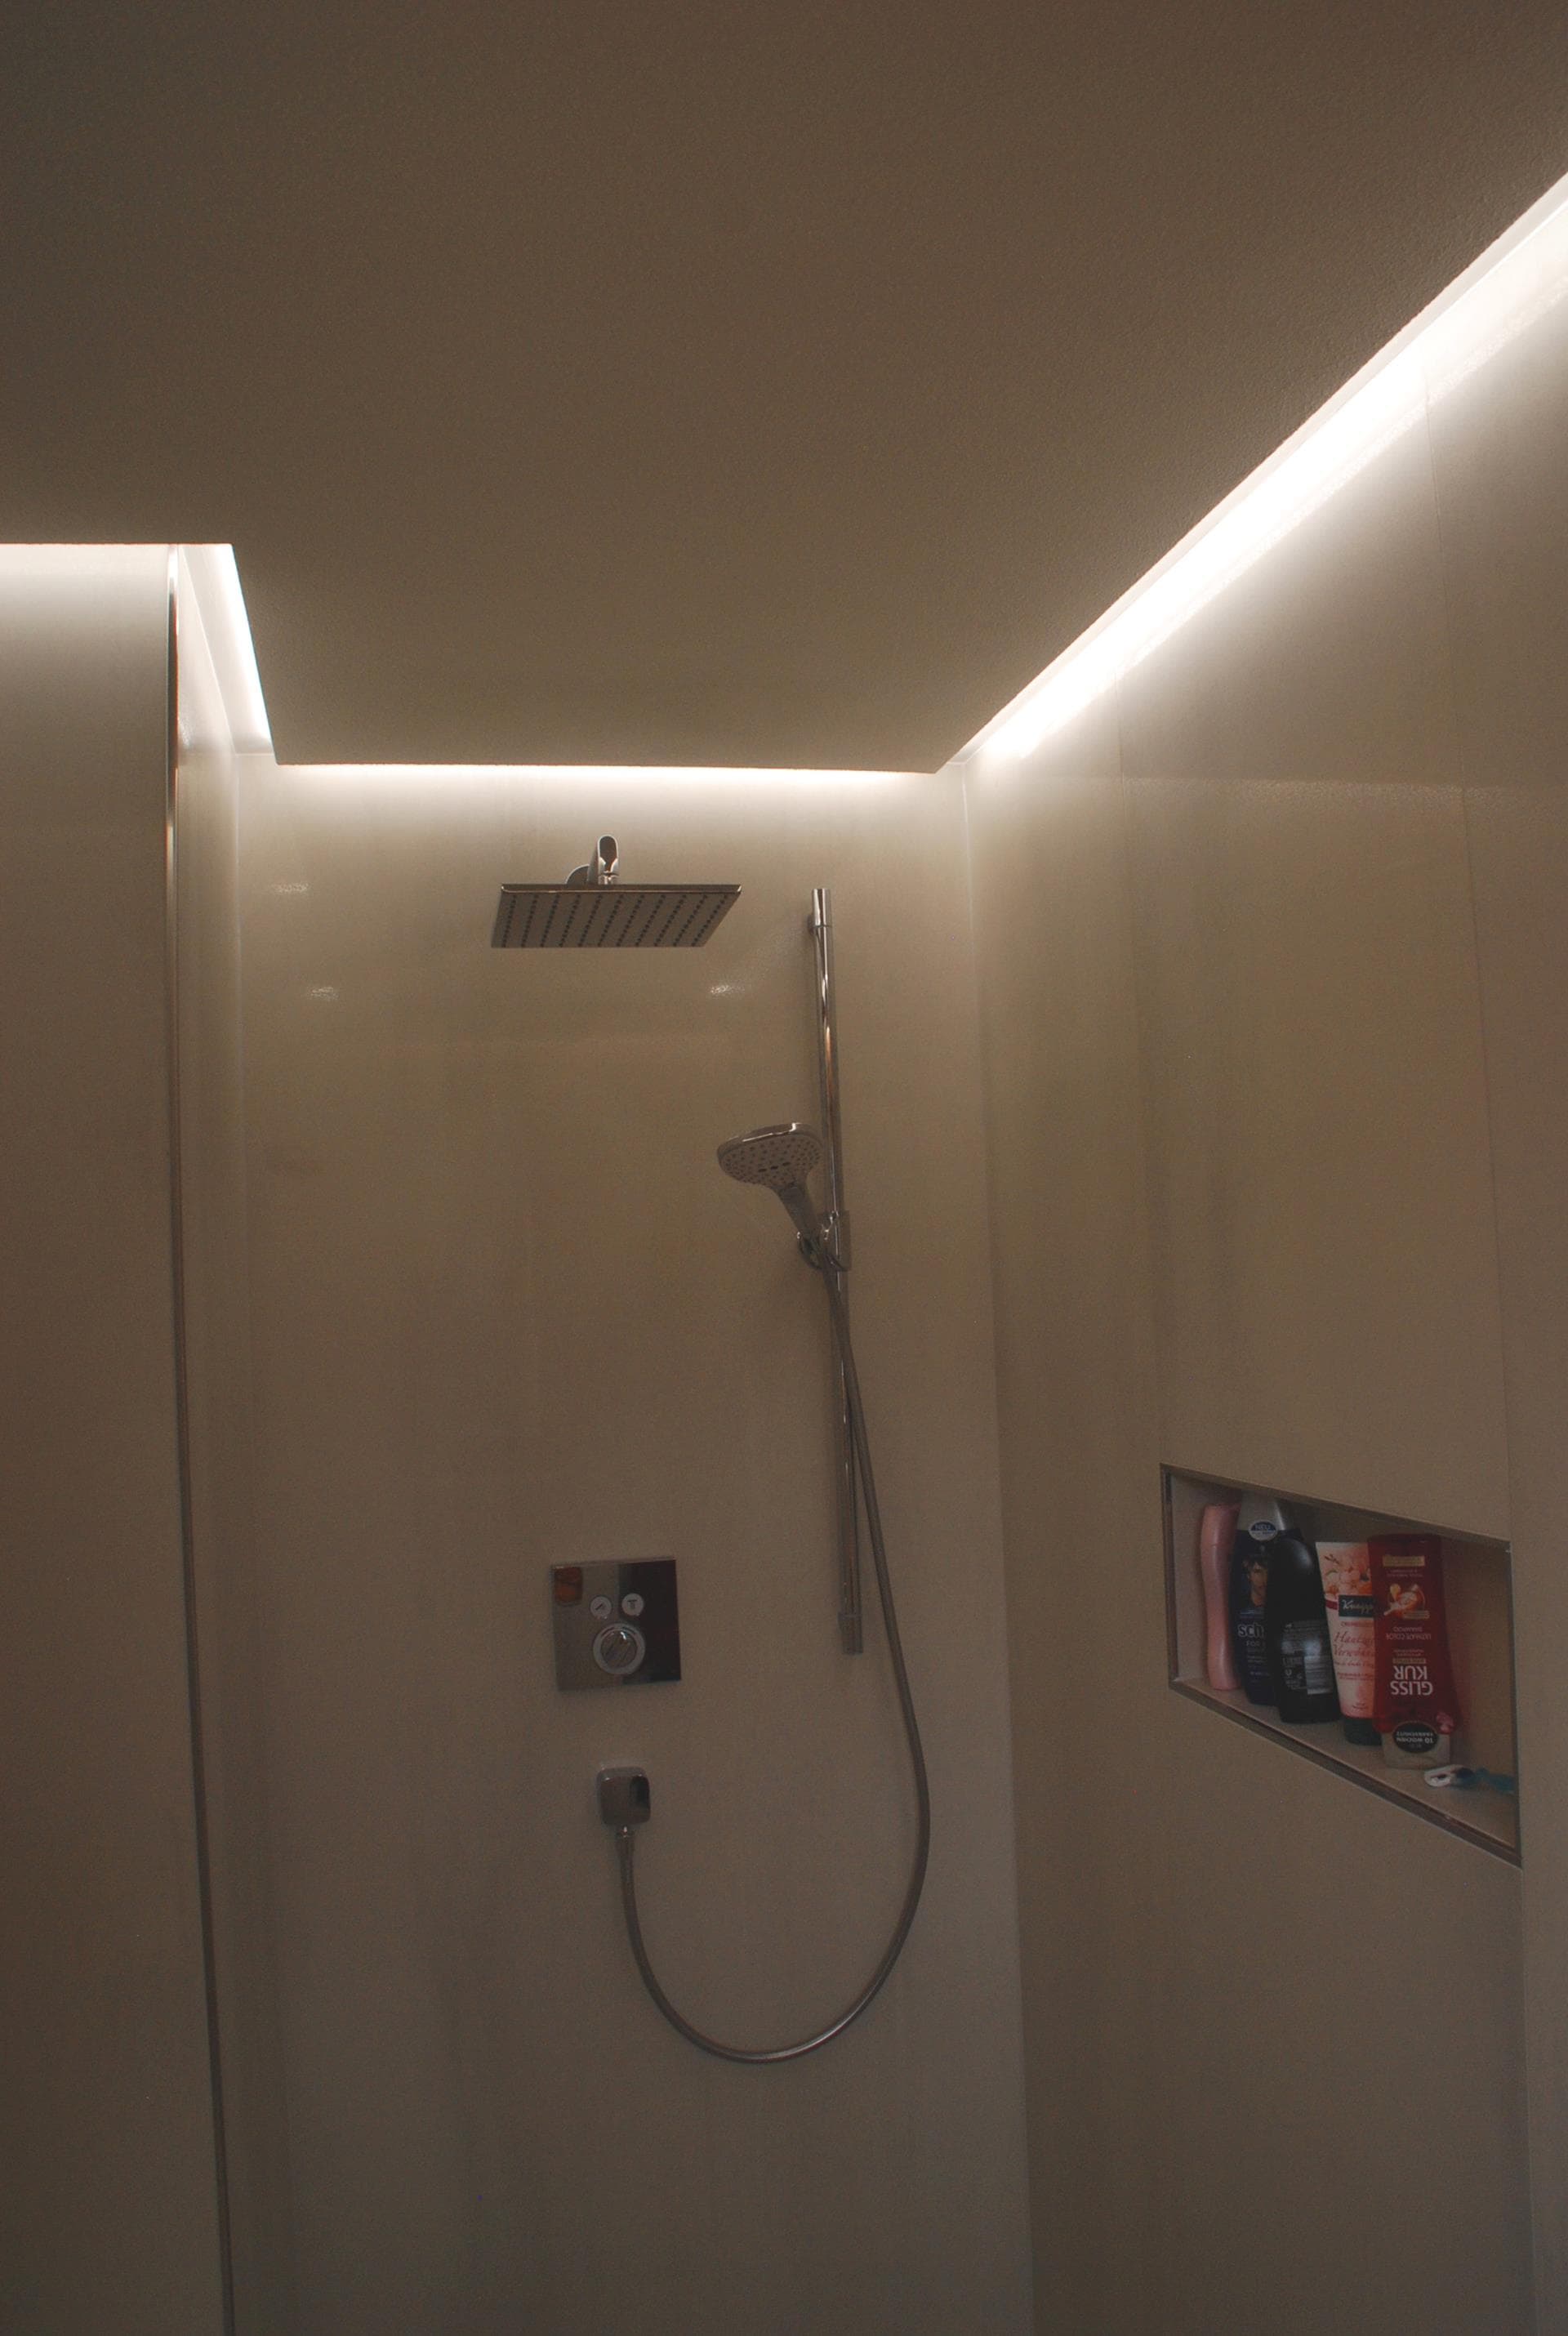 LED-Beleuchtung für das Badezimmer